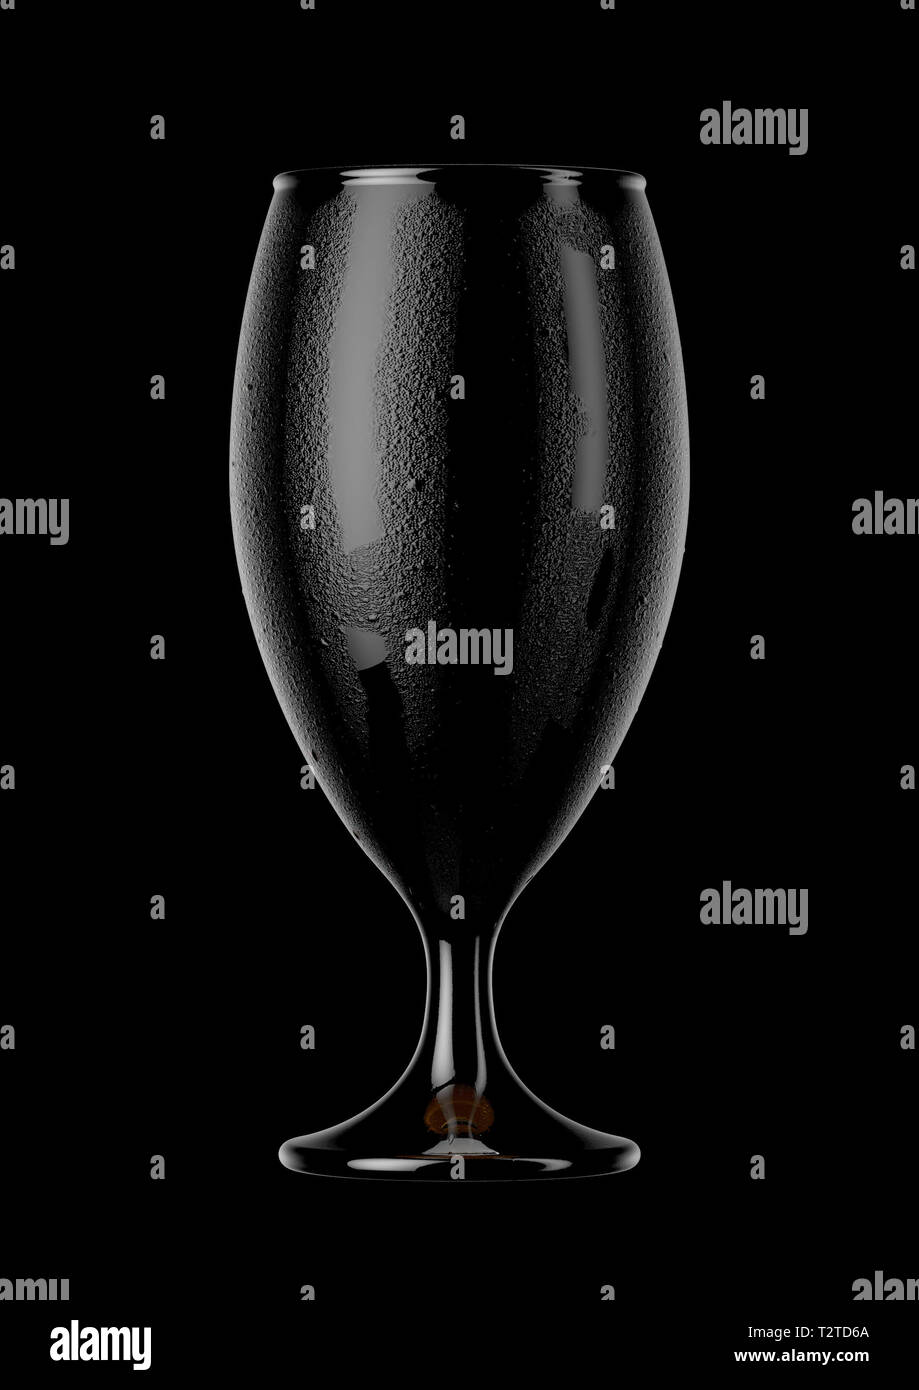 Un résumé d'un point de vue sombre reflet noir en forme de calice en verre de bière avec la condensation sur un arrière-plan isolateddark - rend 3D Banque D'Images